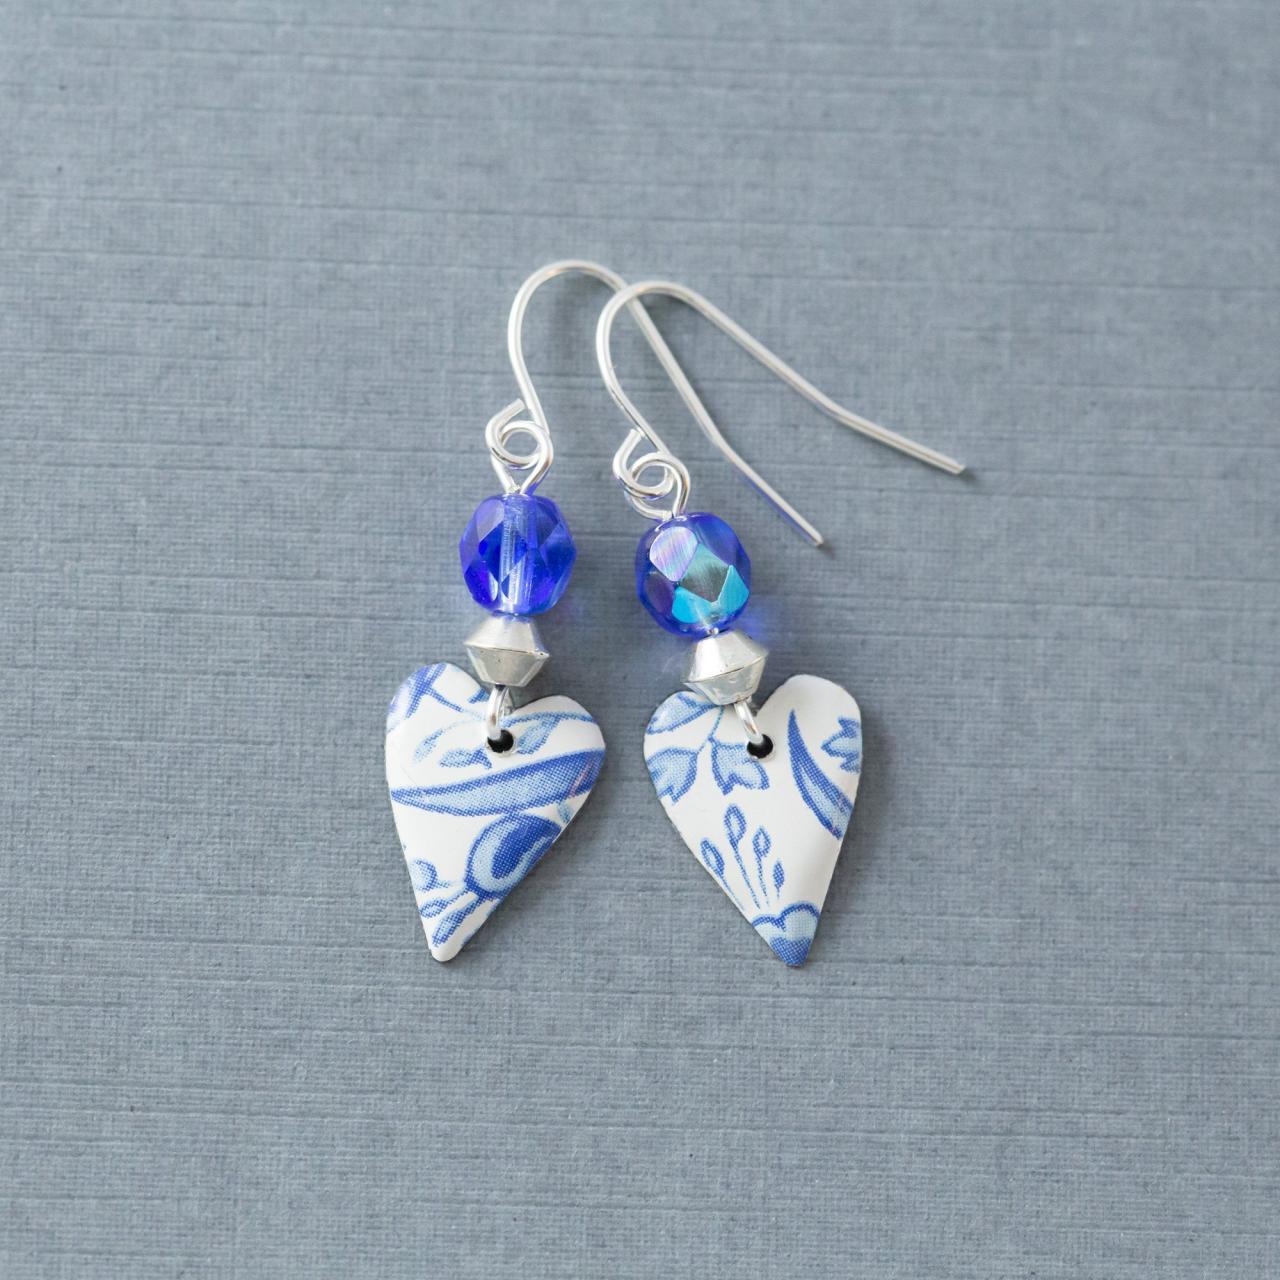 Boho Blue Tin Heart Earrings, Dainty Heart Earrings, Heart Dangle Earrings, Heart Jewelry, Anniversary Gift